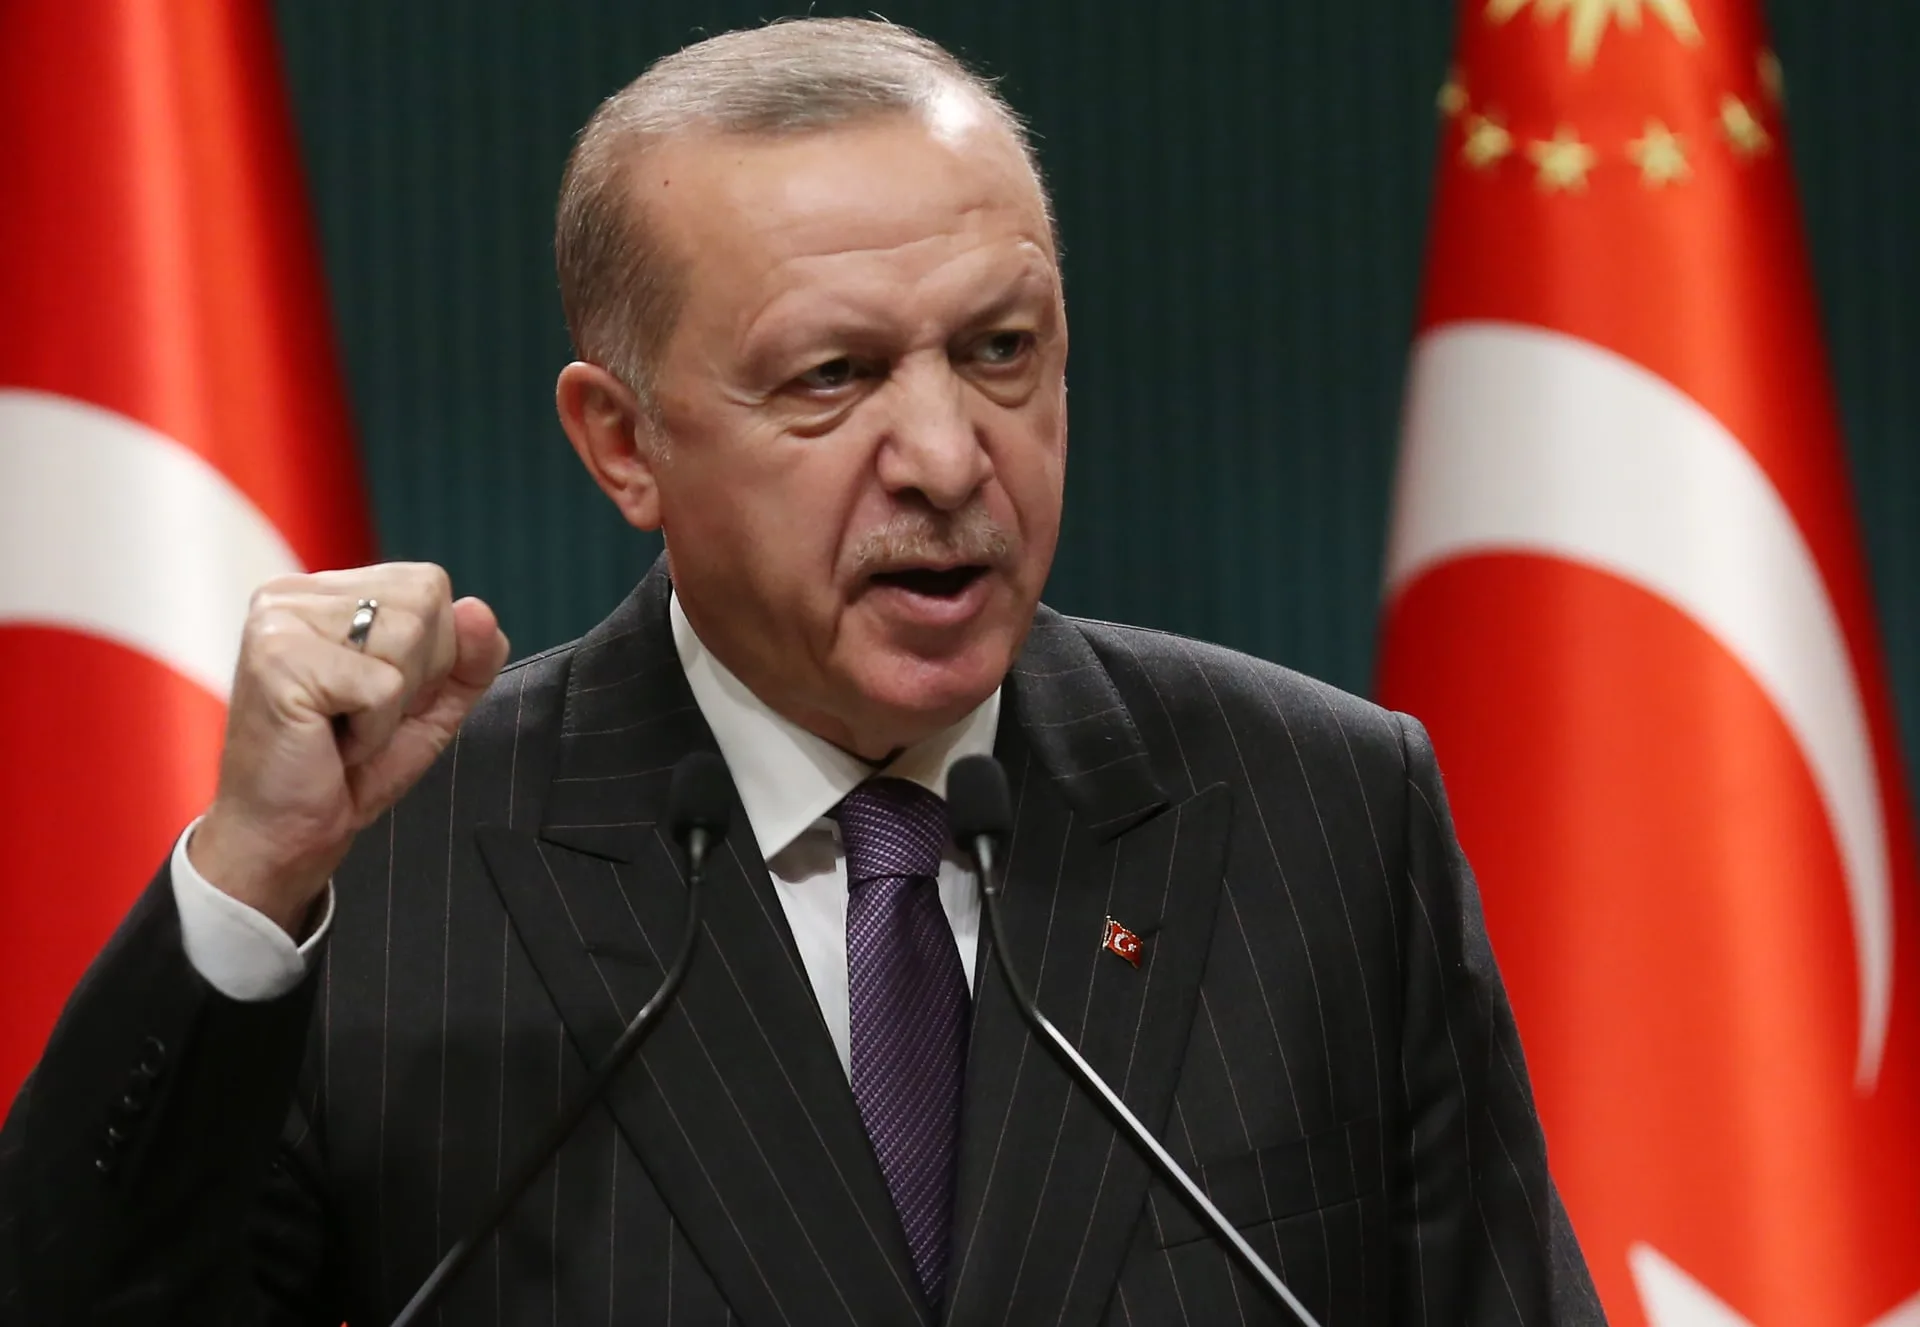 صدق أردوغان وعده ودخلت تركيا النادي النووي